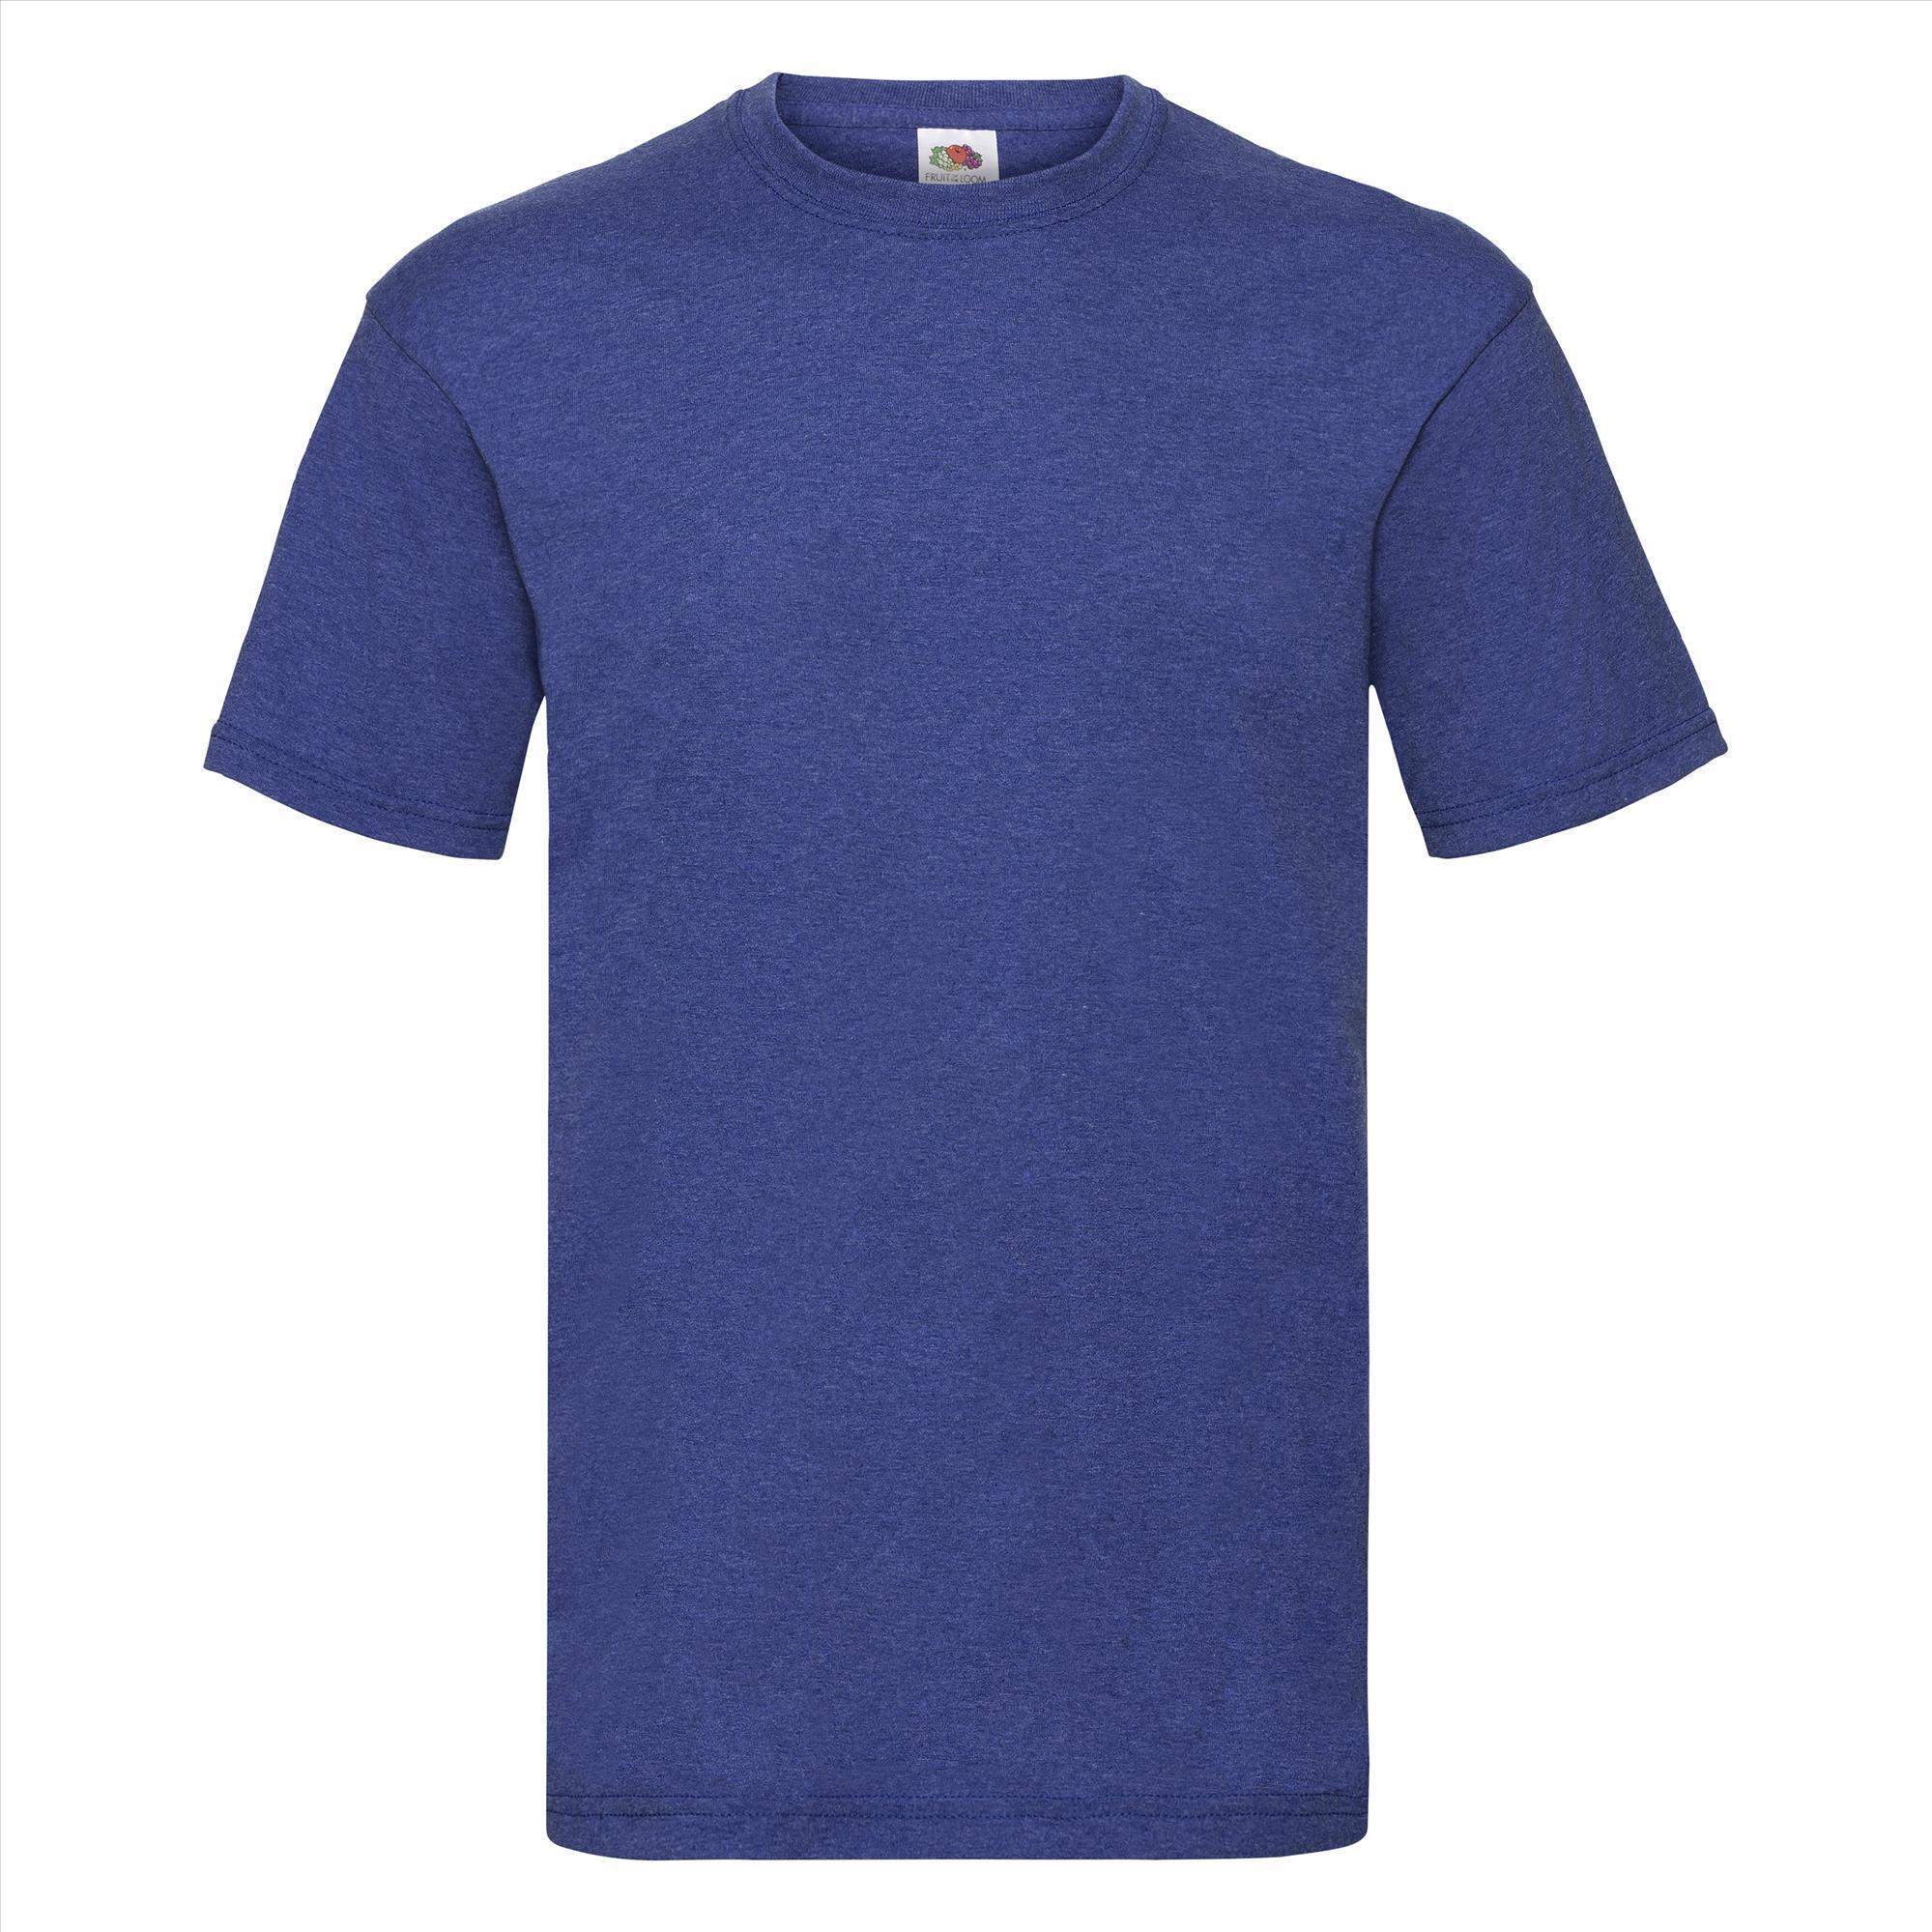 T-shirt voor mannen melange royal blauw personaliseren T-shirt bedrukken